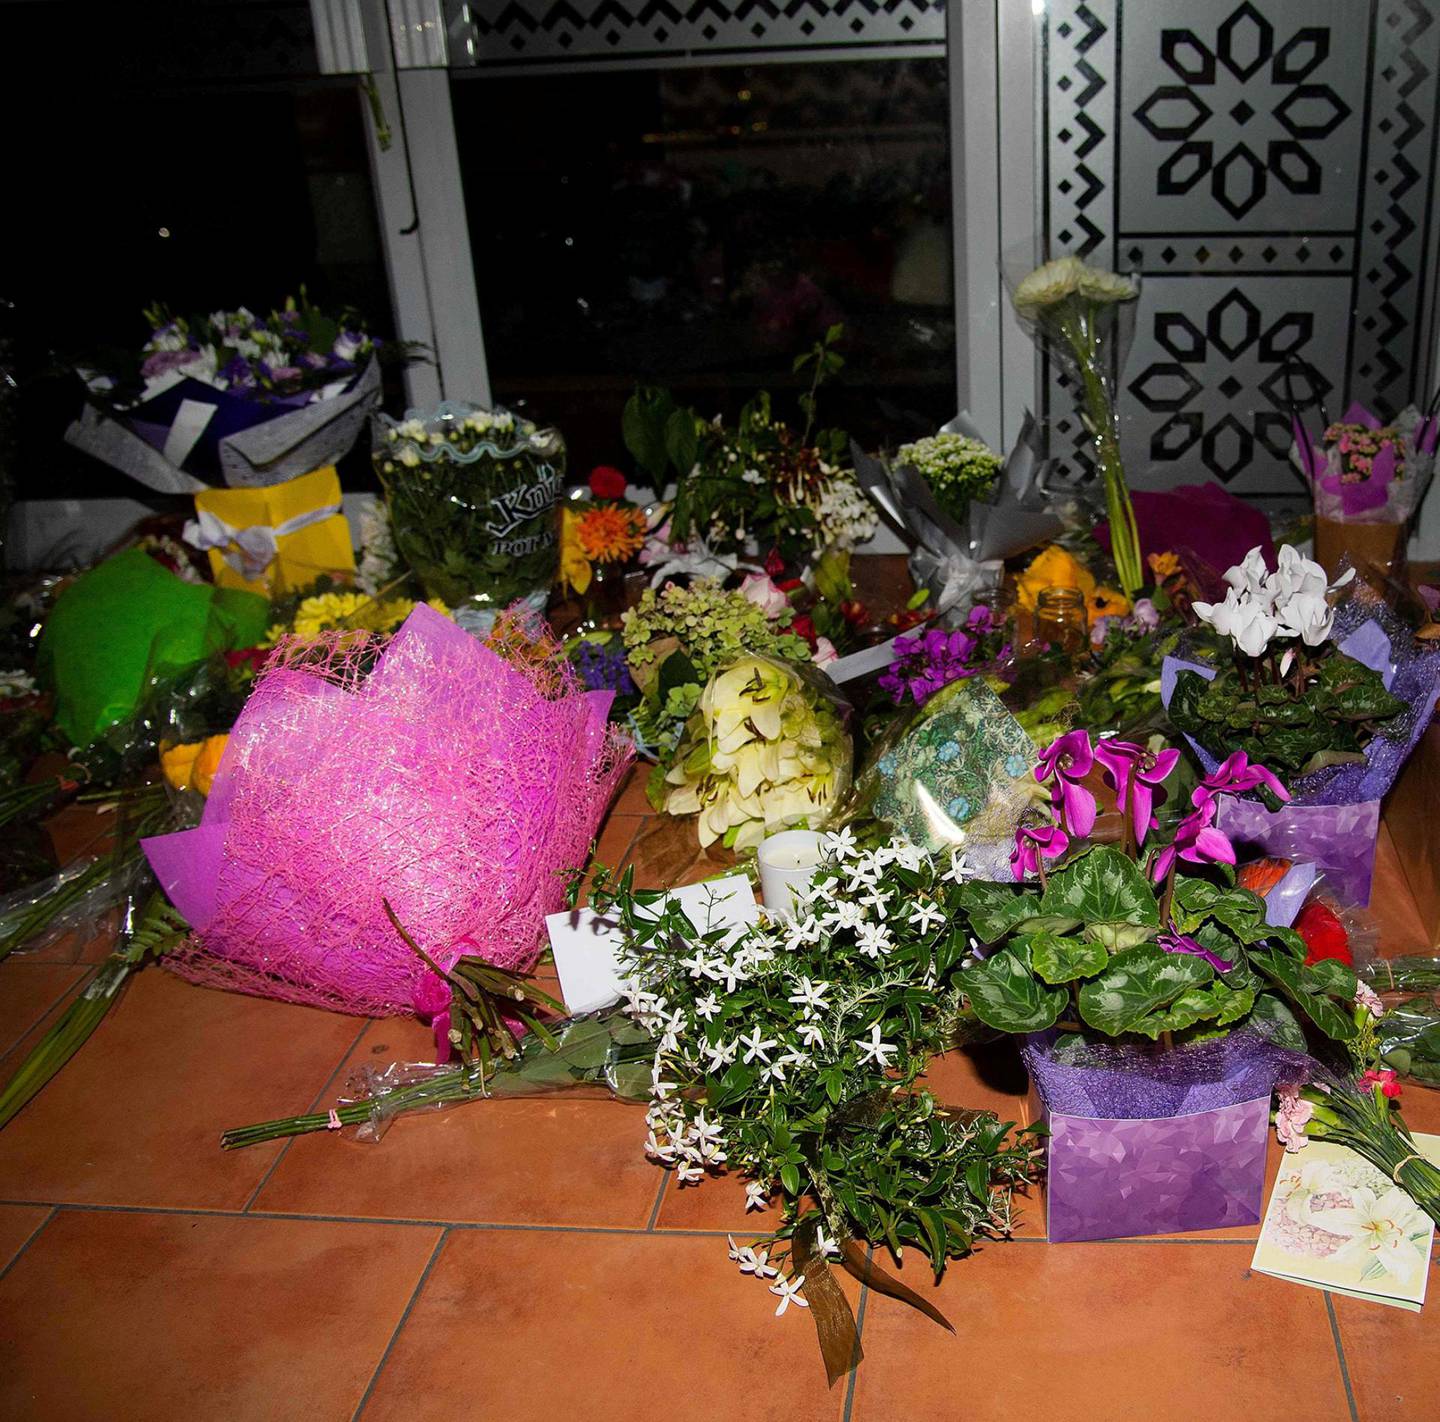 SØRGER: Blomster er lagt ut foran inngang til en moske i Wellington. FOTO: NTB SCANPIX